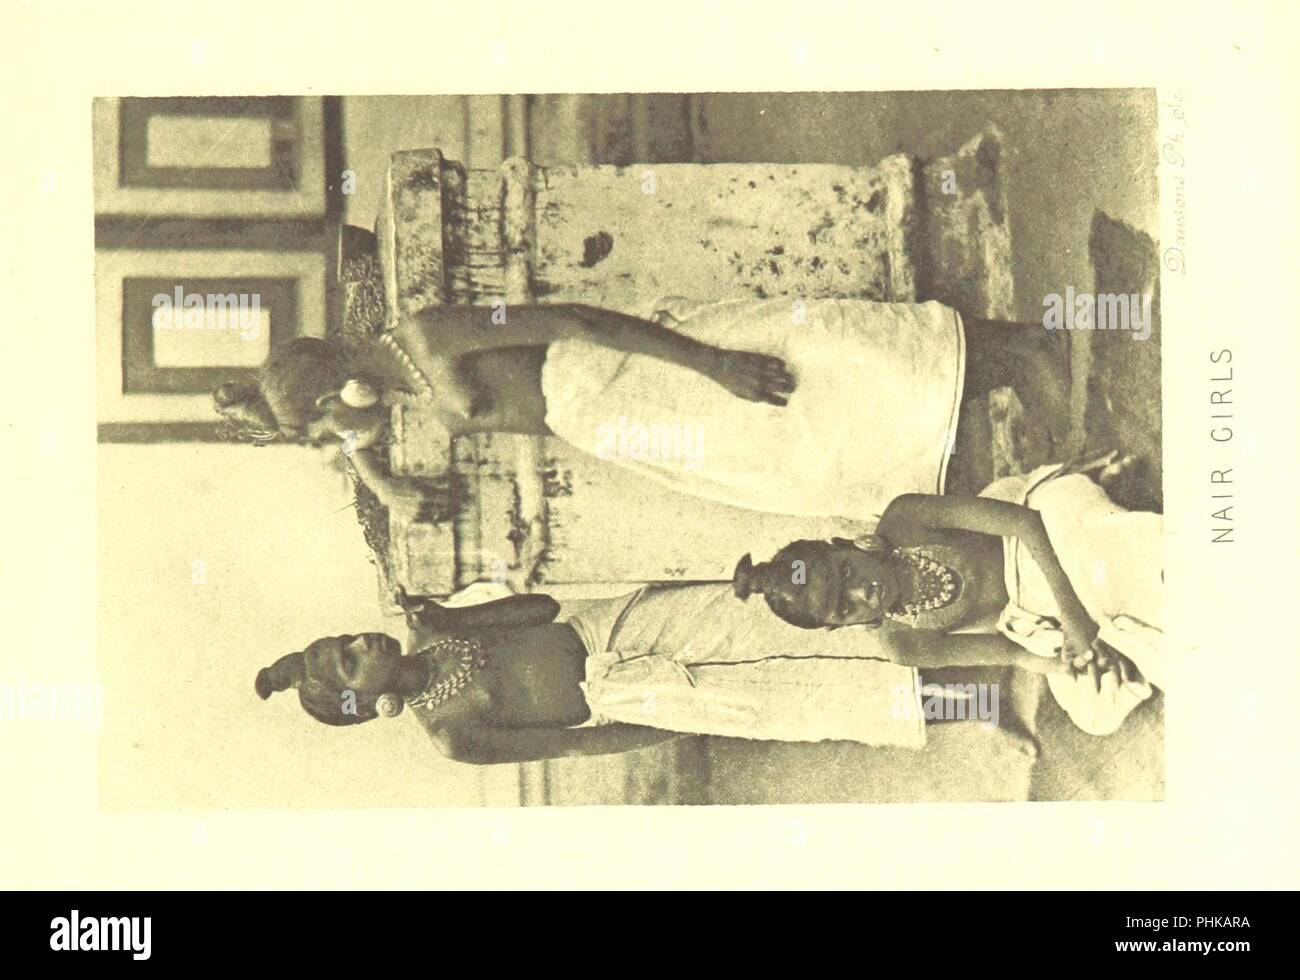 Bild von Seite 223 "Seine Königliche Hoheit, der Herzog von Clarence und Avondale im Süden Indiens. Von J. D. Rees... Mit einer Erzählung von Elephant-fang in Mysore von G. S. Sanderson... Mit Karten, Porträts und Illustrationen" durch die Briten 0052. Stockfoto